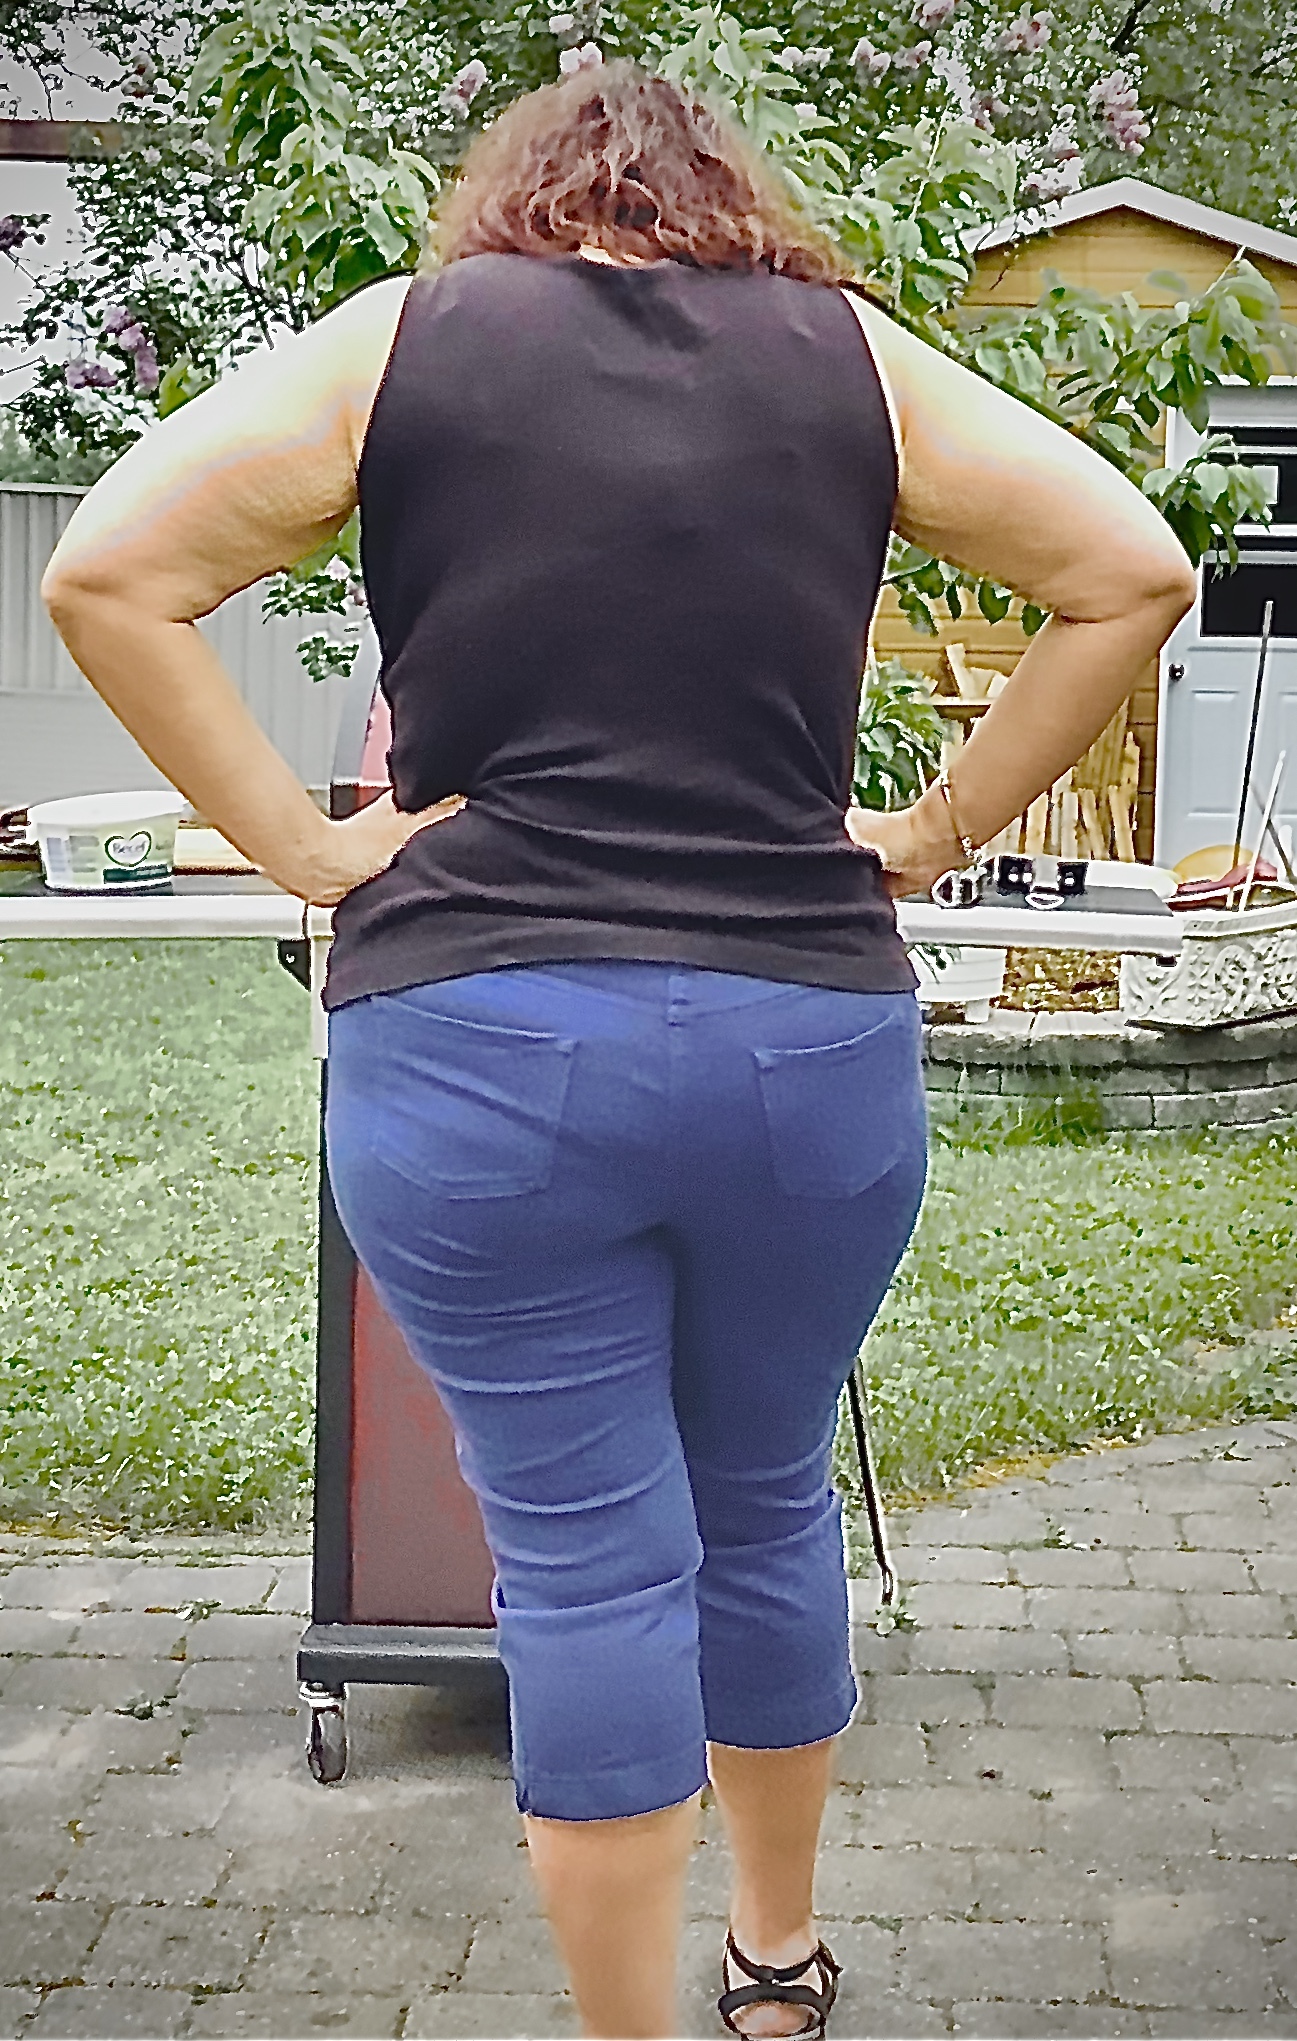 Big Butt Queen pic